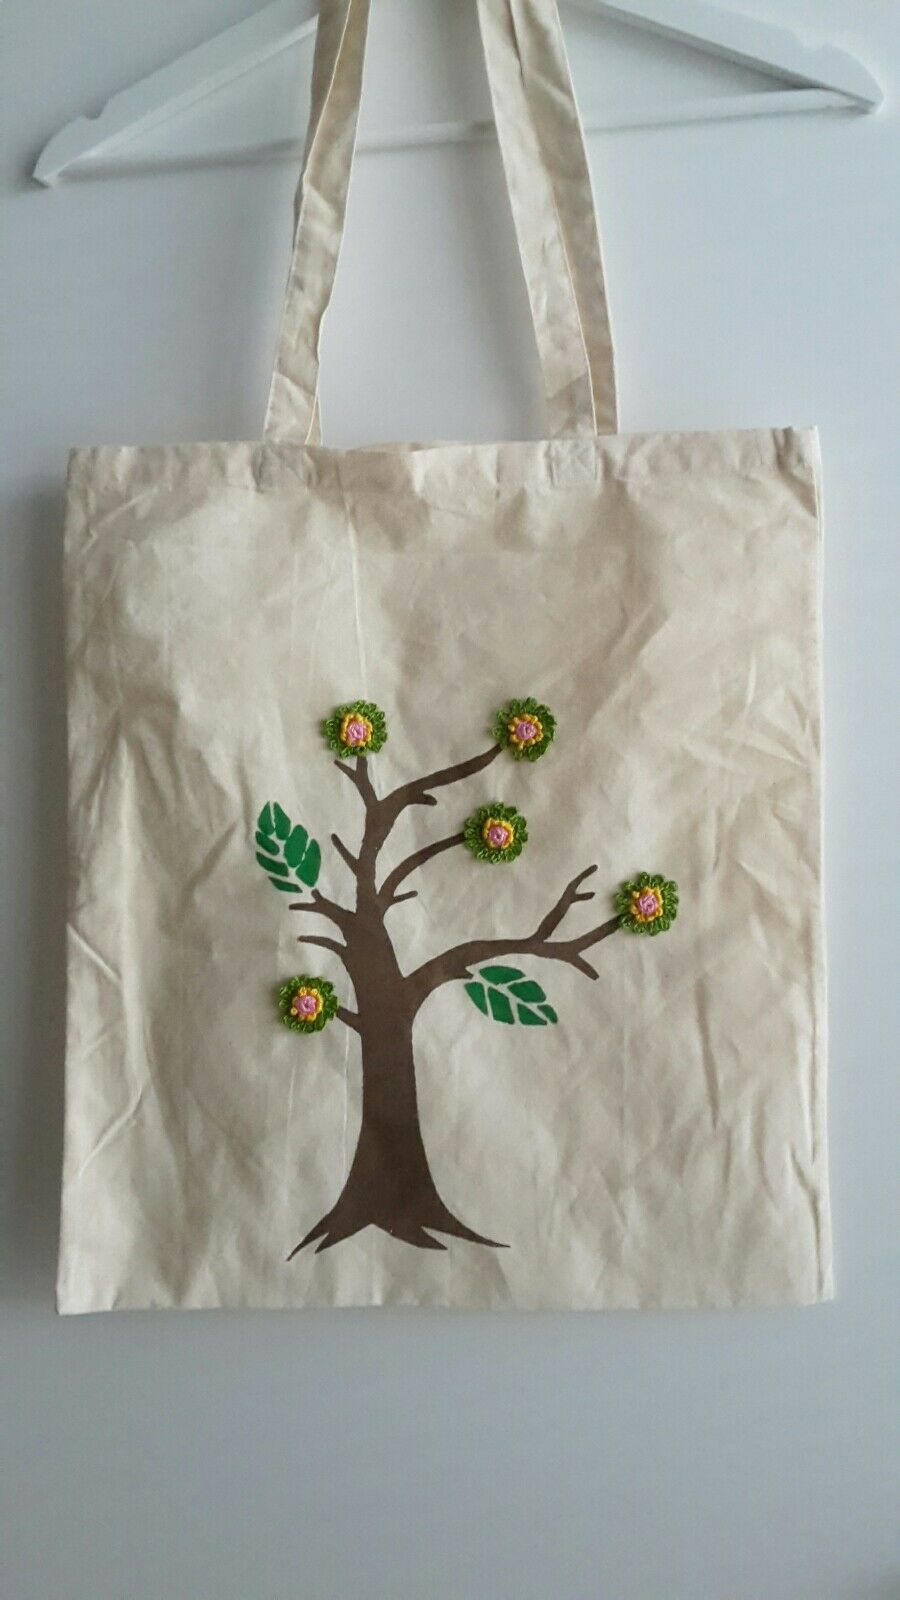 Cotton Bag- Shopping Summer Bag- Gift- Re Usable bag- Foldable bag